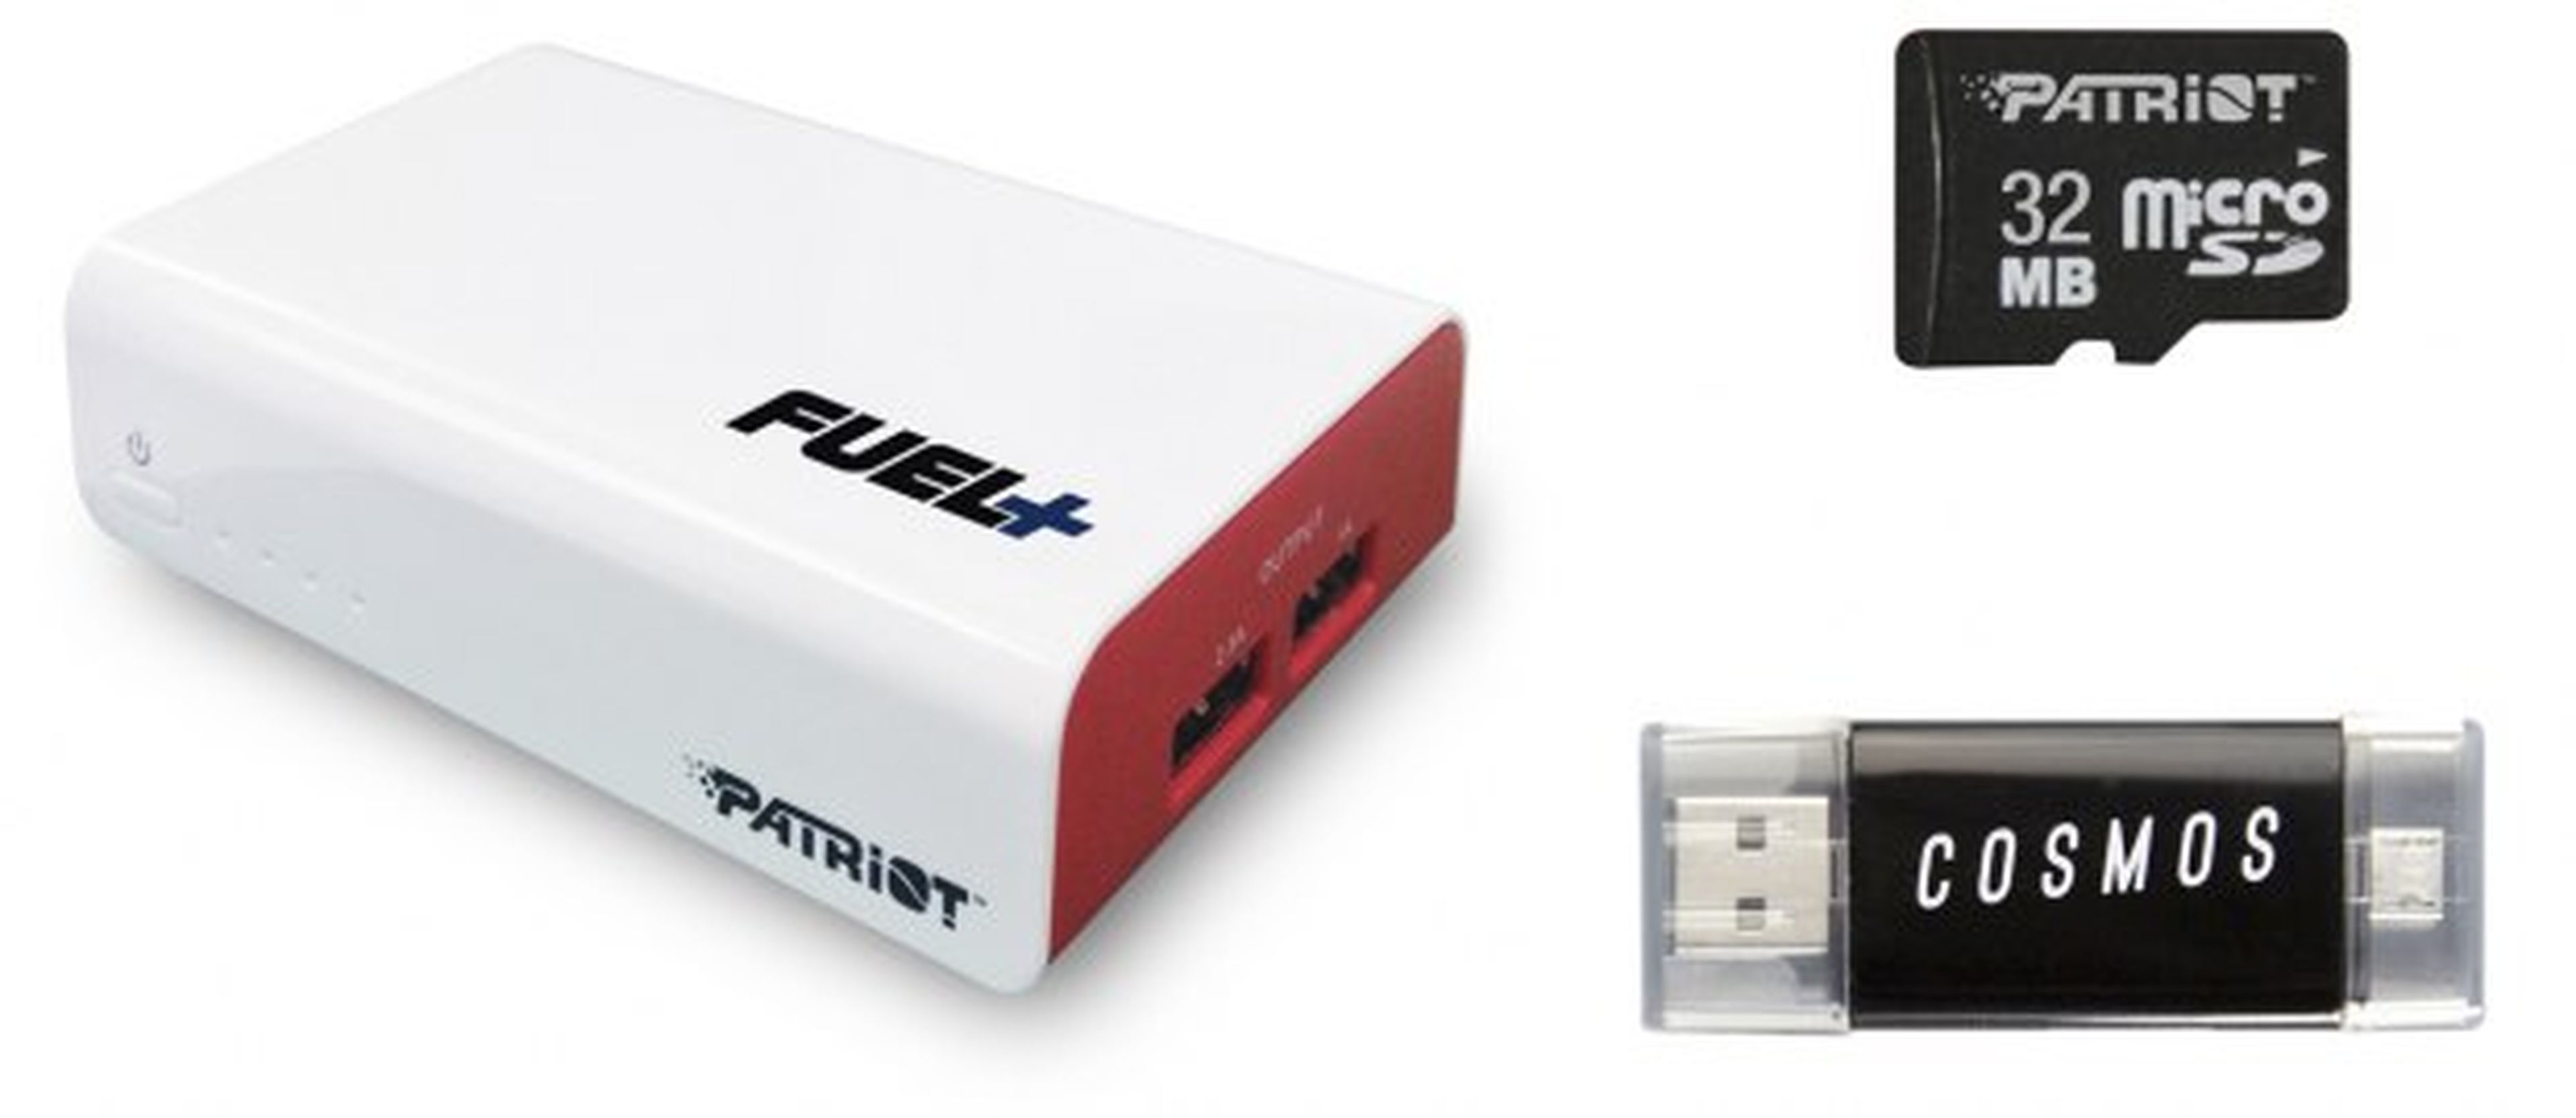 Batería portátil Patriot Fuel+ con Lector Cosmos USB OTG